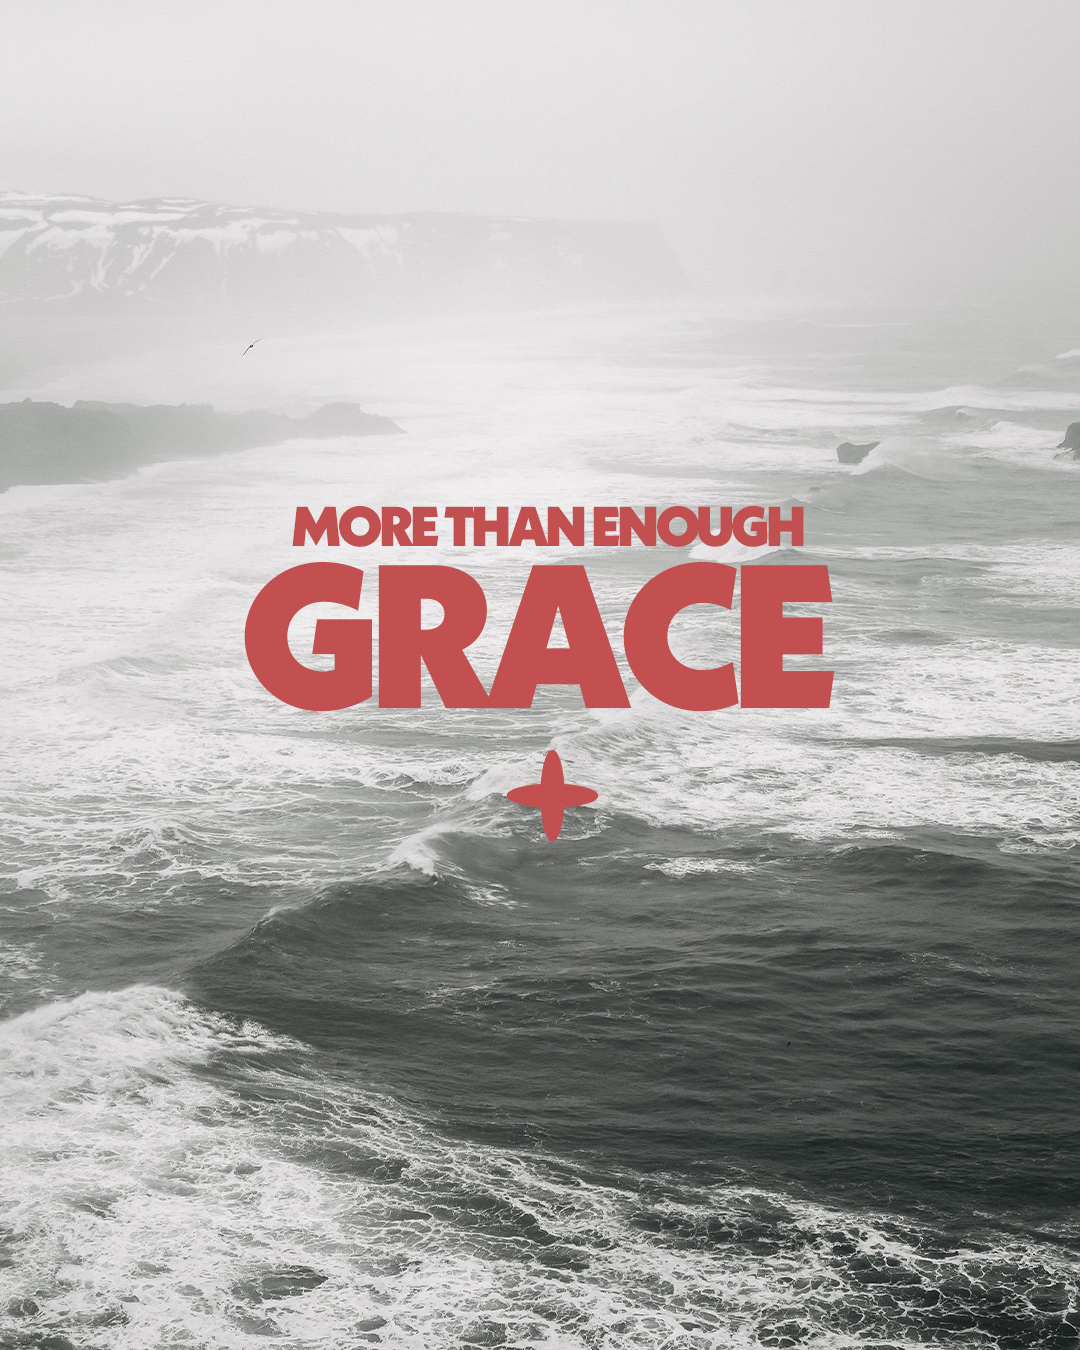 More than enough grace